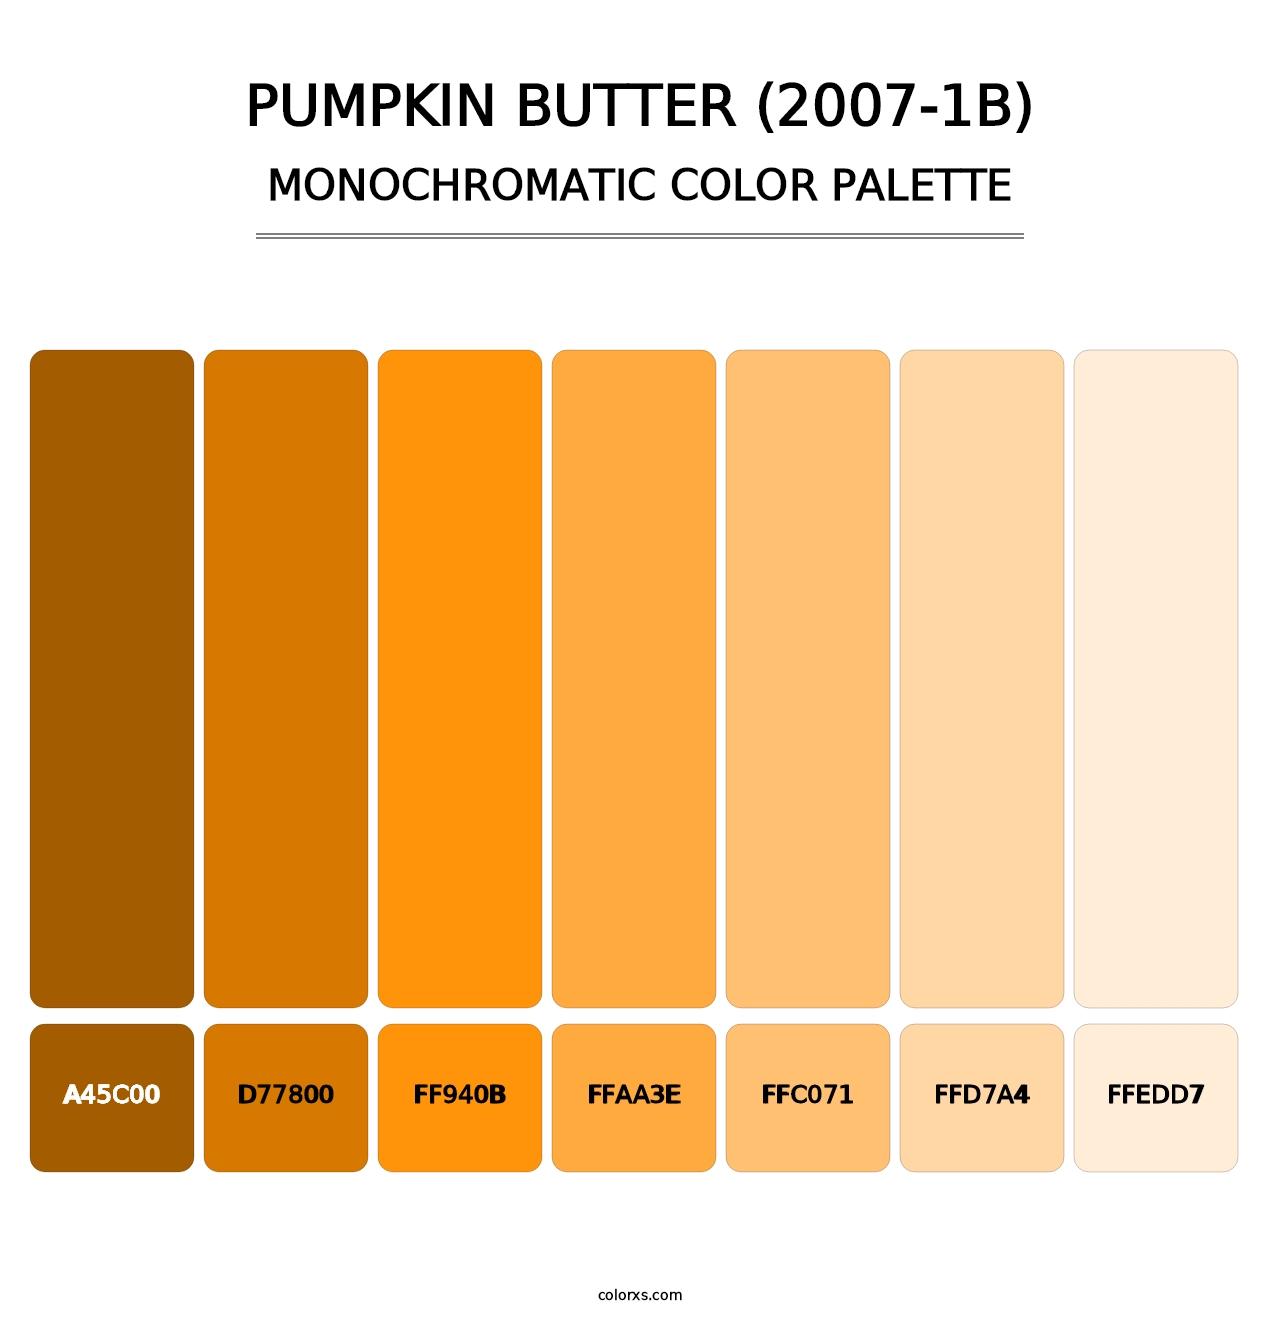 Pumpkin Butter (2007-1B) - Monochromatic Color Palette